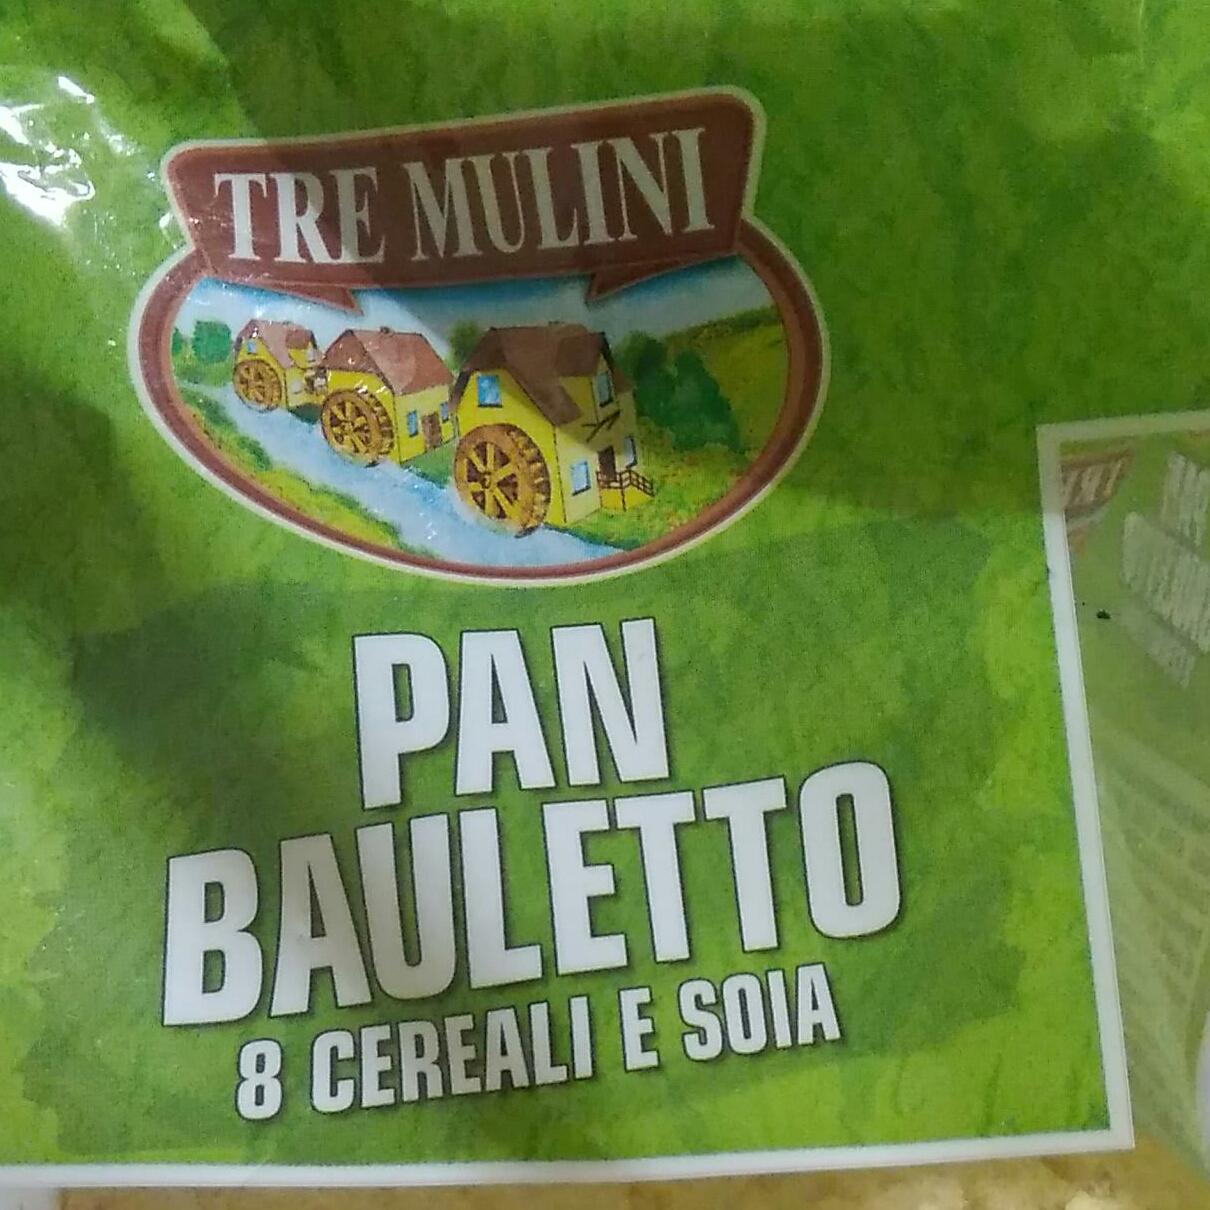 Fotografie - Pan Bauletto 8 cereali e soia Tre Mulini